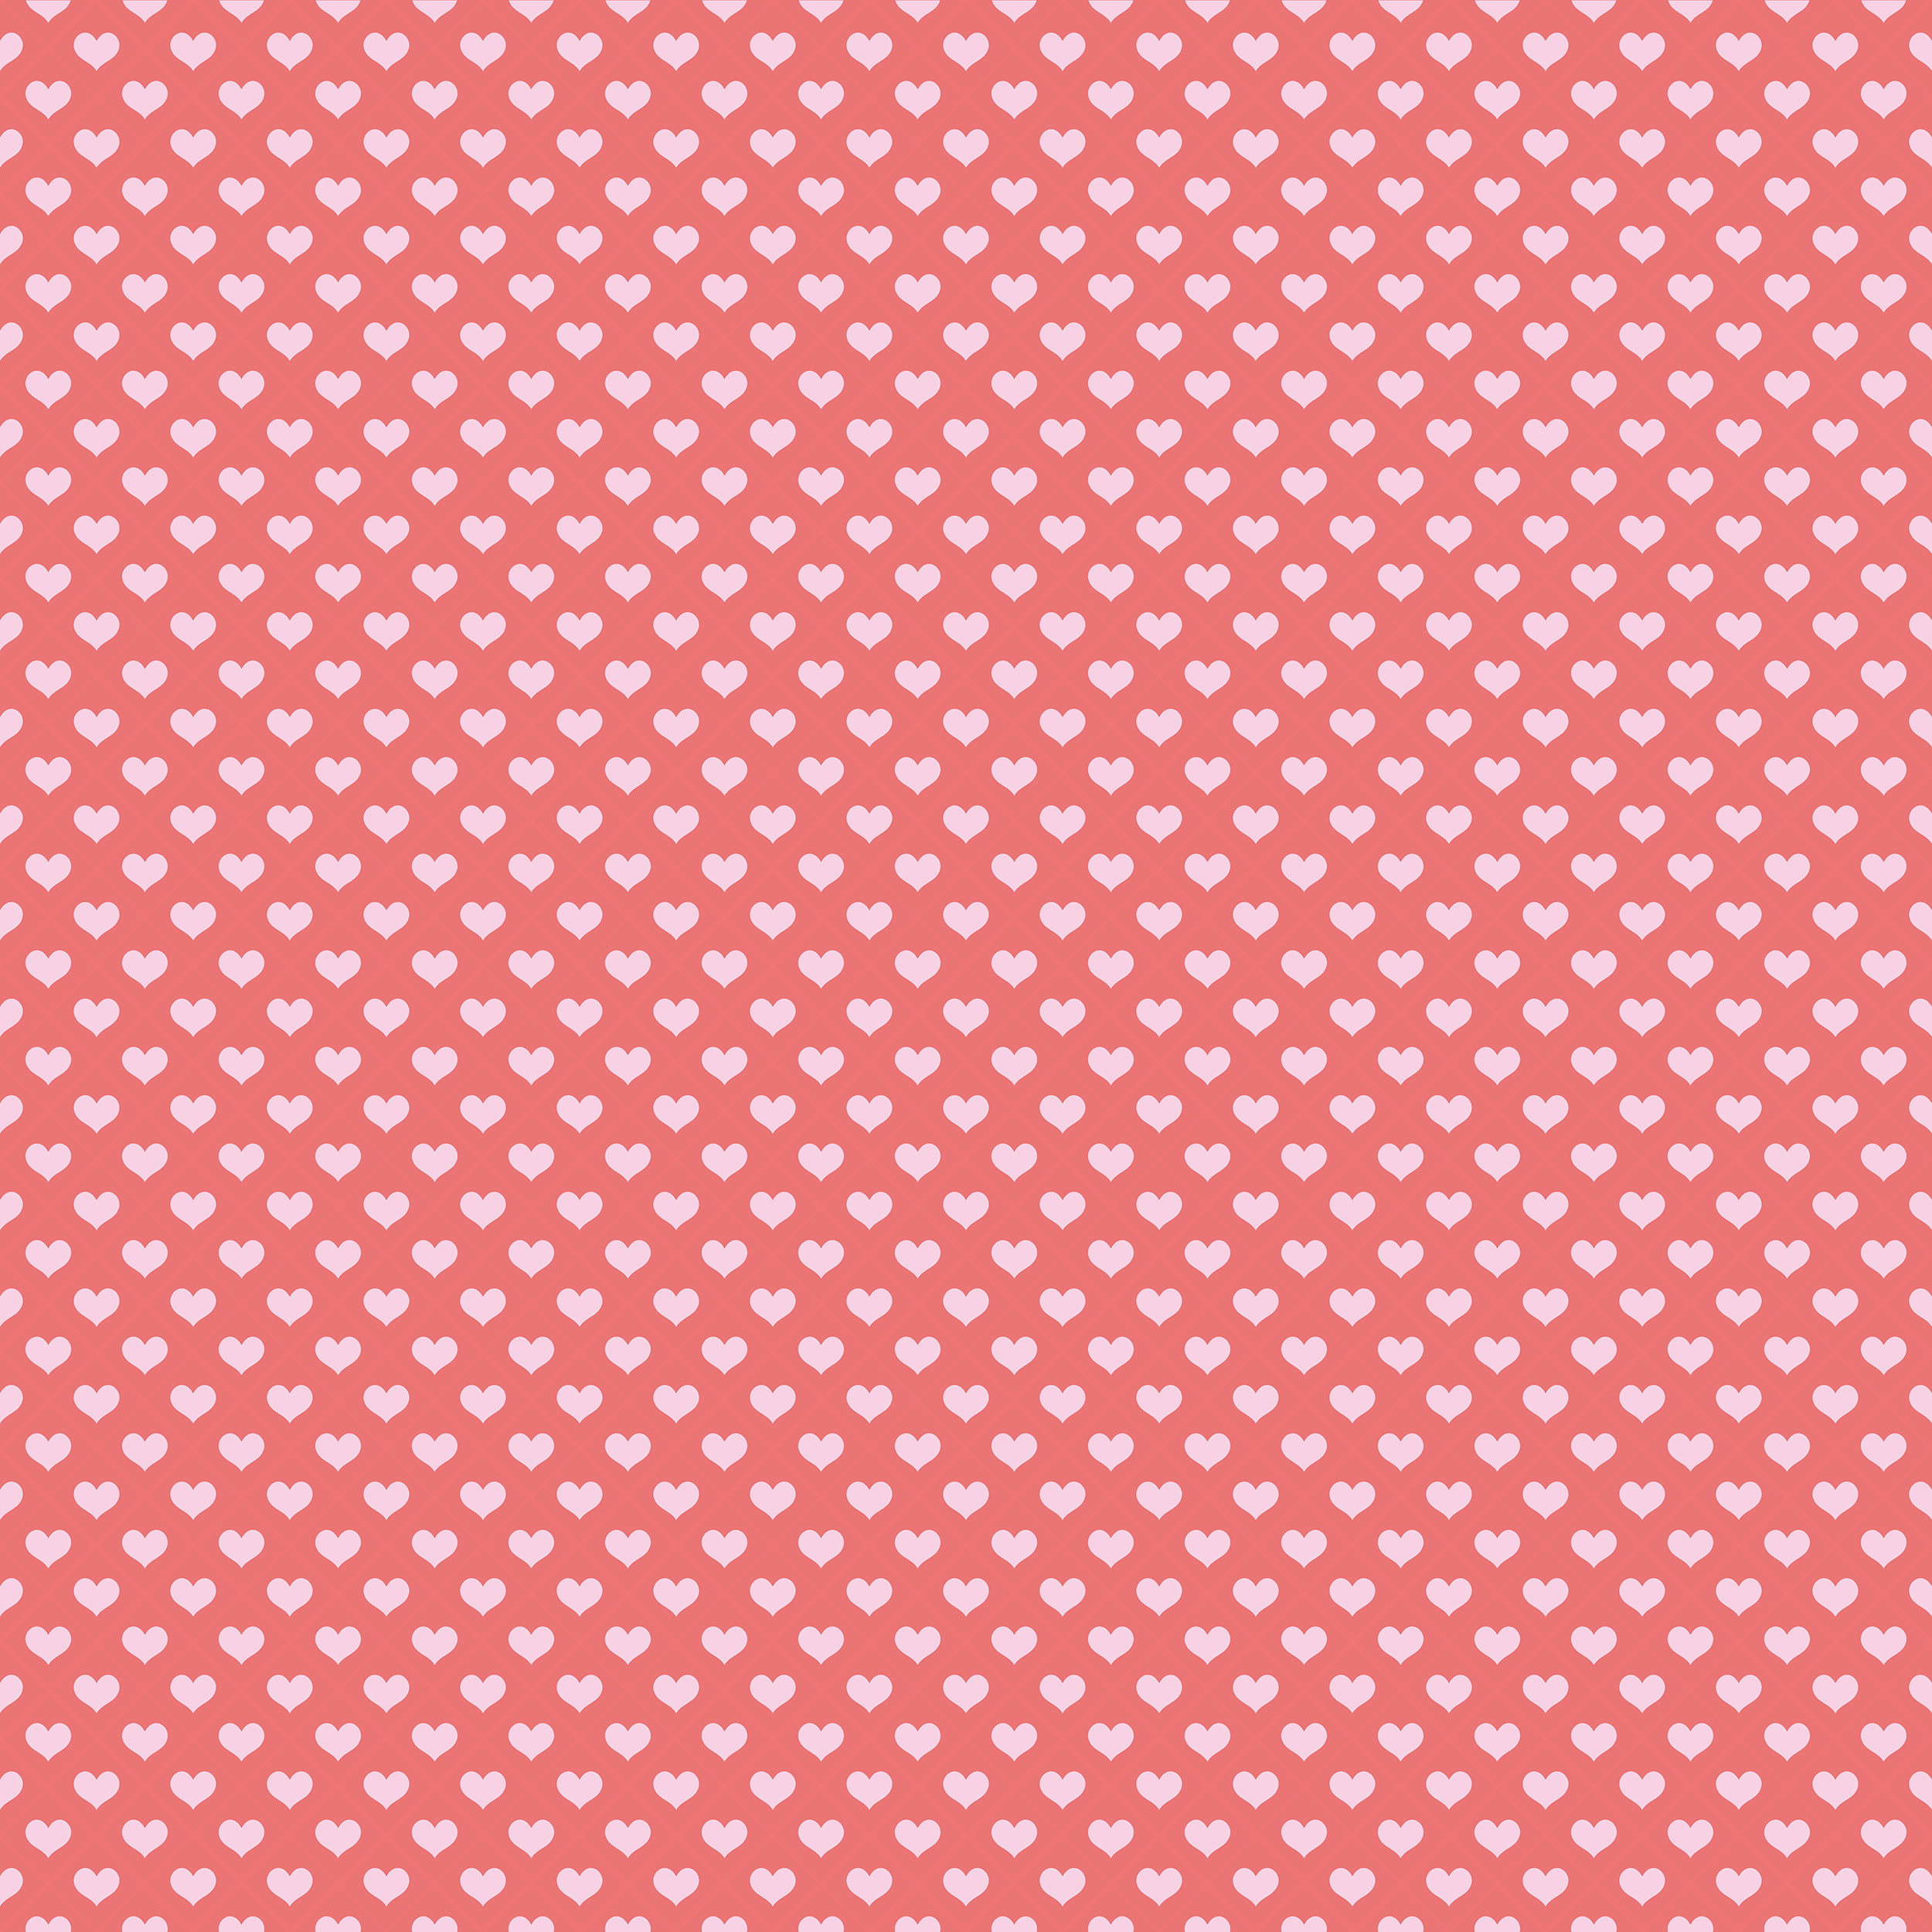 ハートデザインの壁紙 背景素材 無料画像no 263 二色ハート 赤ピンク